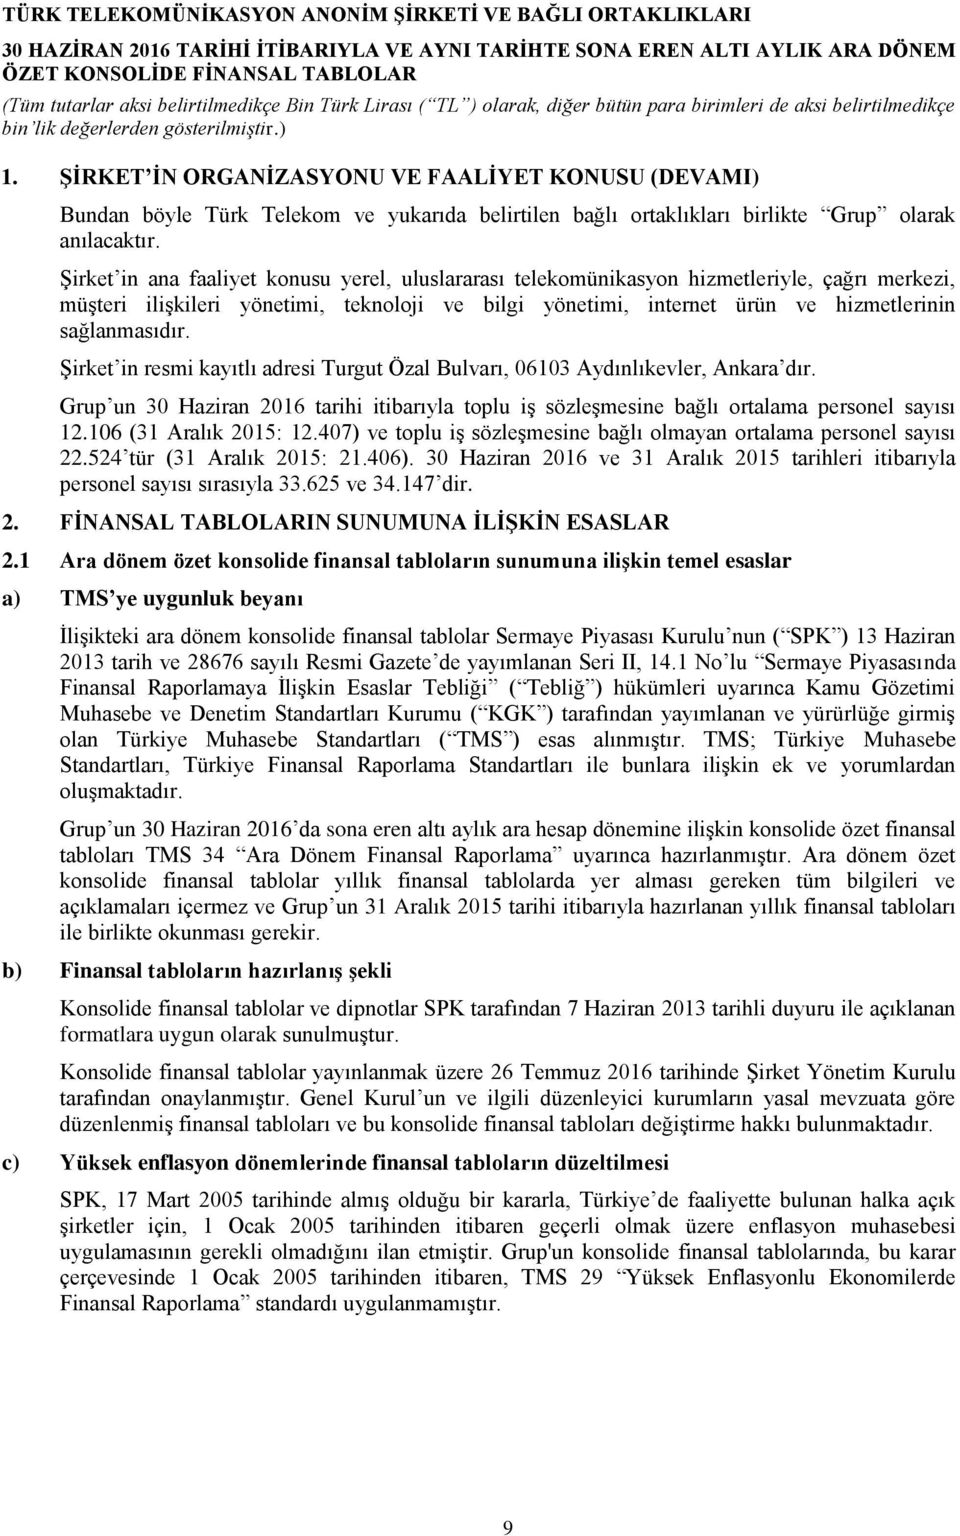 Şirket in resmi kayıtlı adresi Turgut Özal Bulvarı, 06103 Aydınlıkevler, Ankara dır. Grup un 30 Haziran 2016 tarihi itibarıyla toplu iş sözleşmesine bağlı ortalama personel sayısı 12.